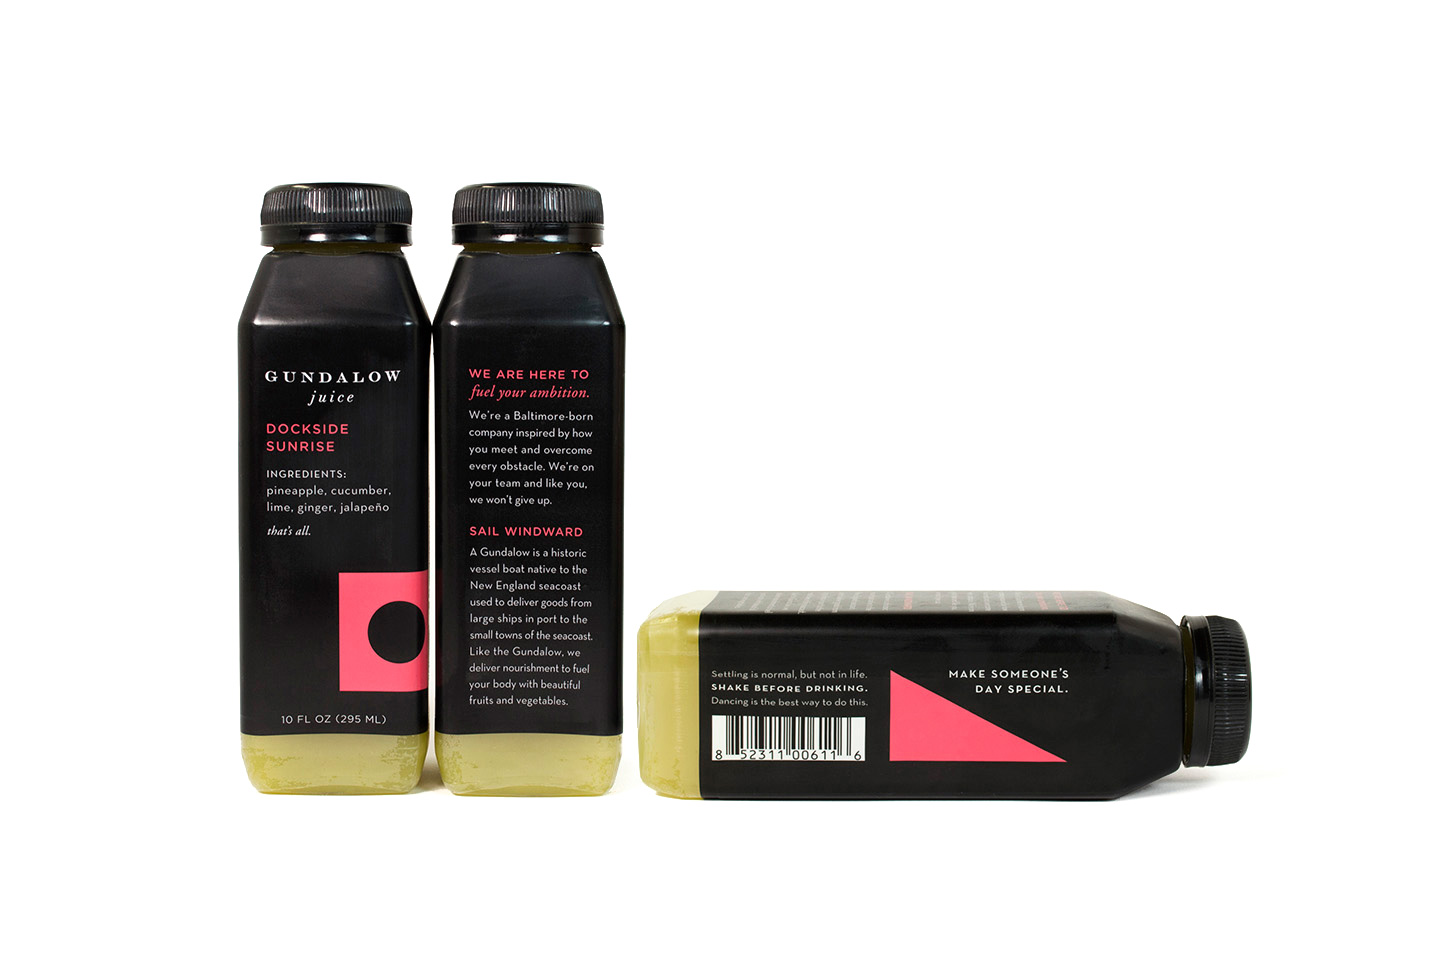 Gundalow Juice: Bottle Package Design for Dockside Sunrise